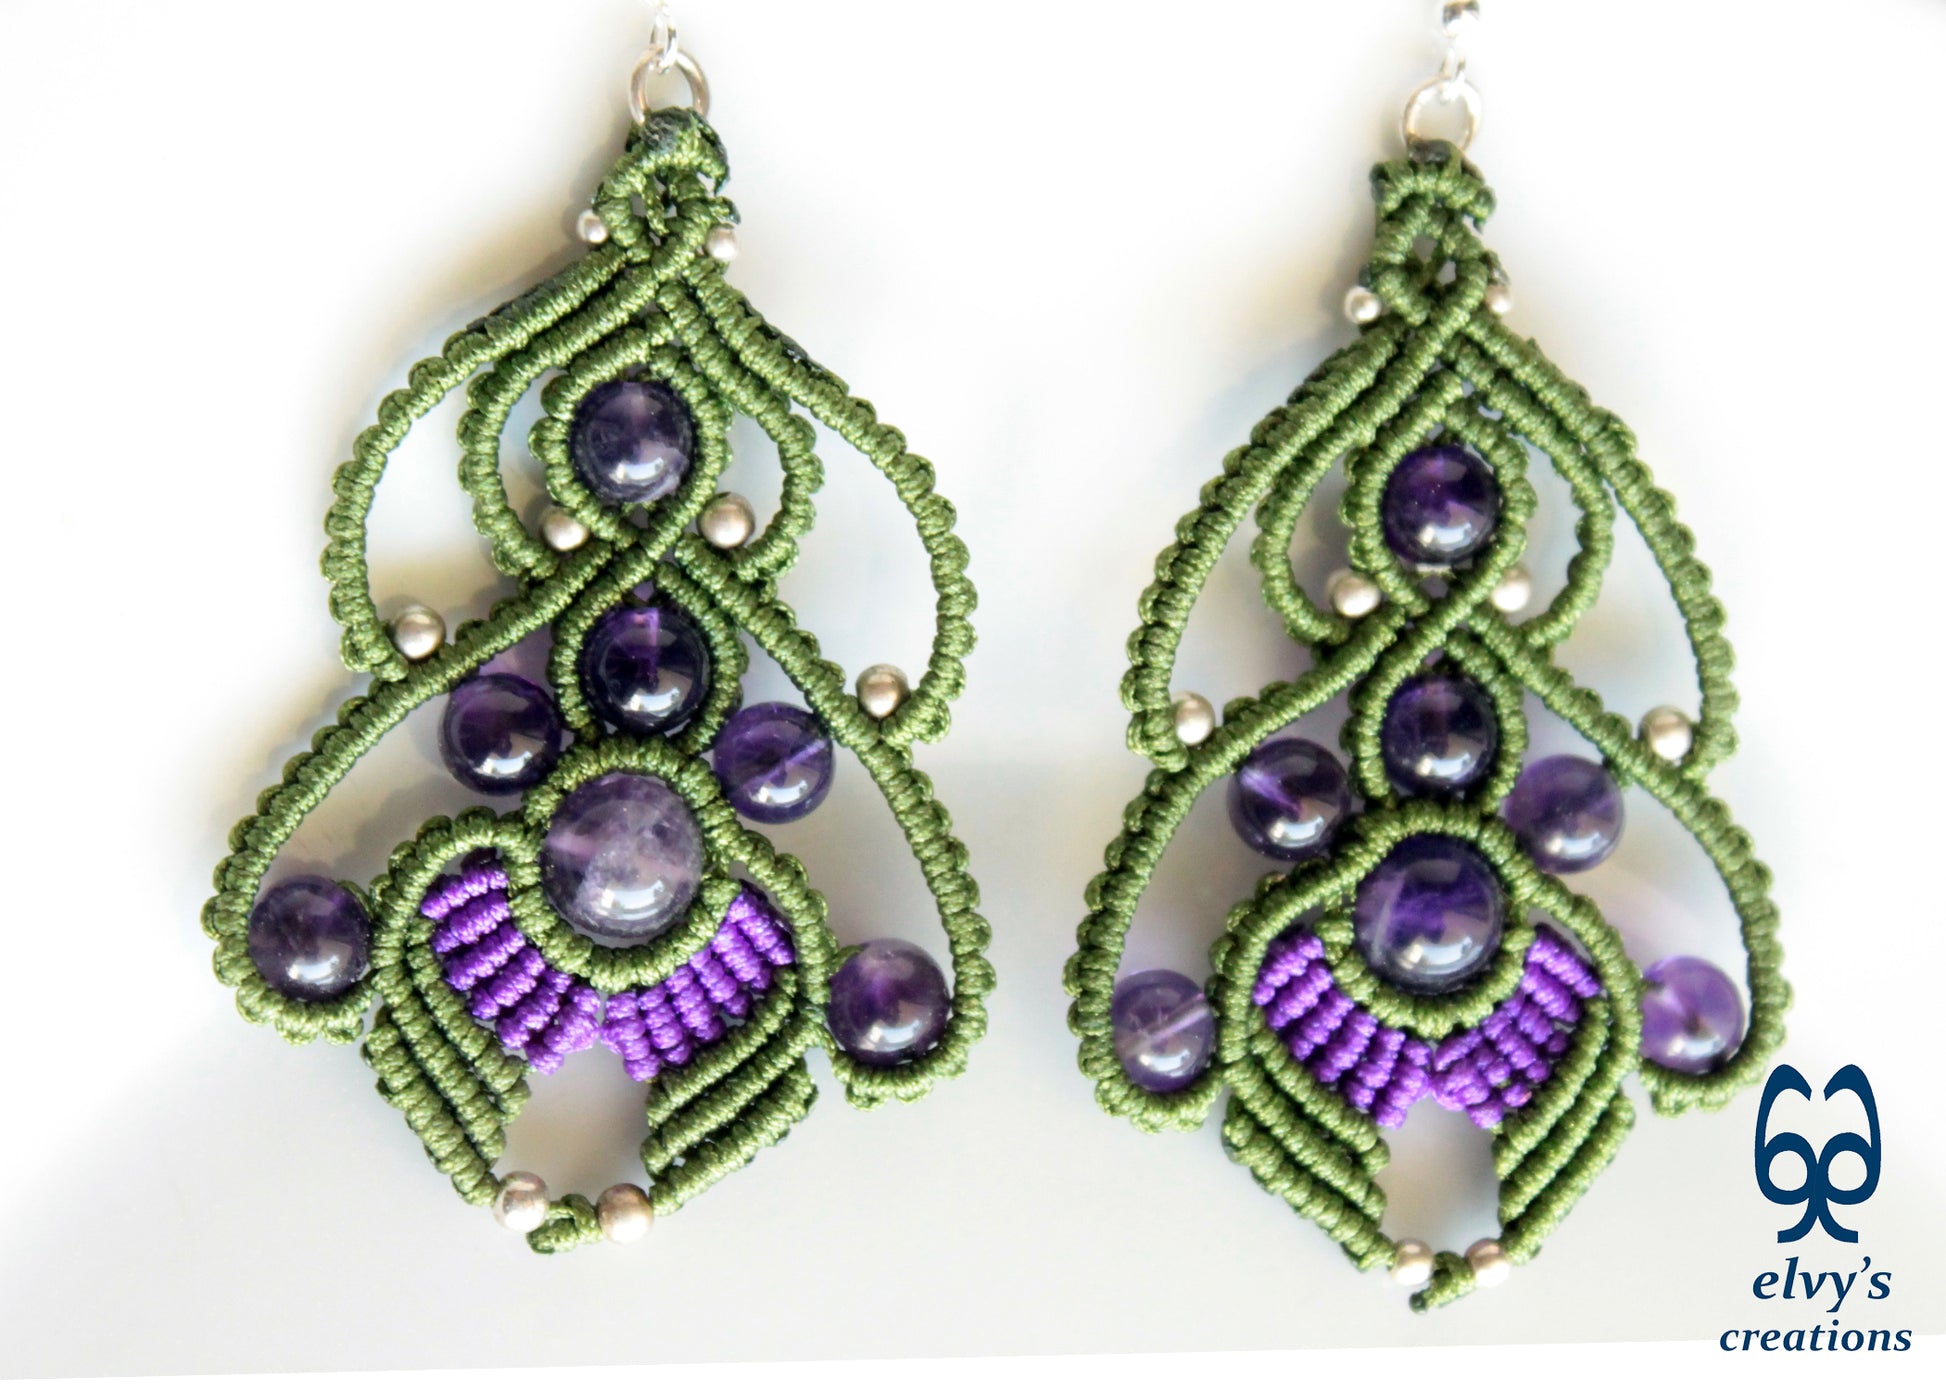 Handmade Macrame Earrings Green and Purple Macrame Earrings with Amethyst Gemstones 